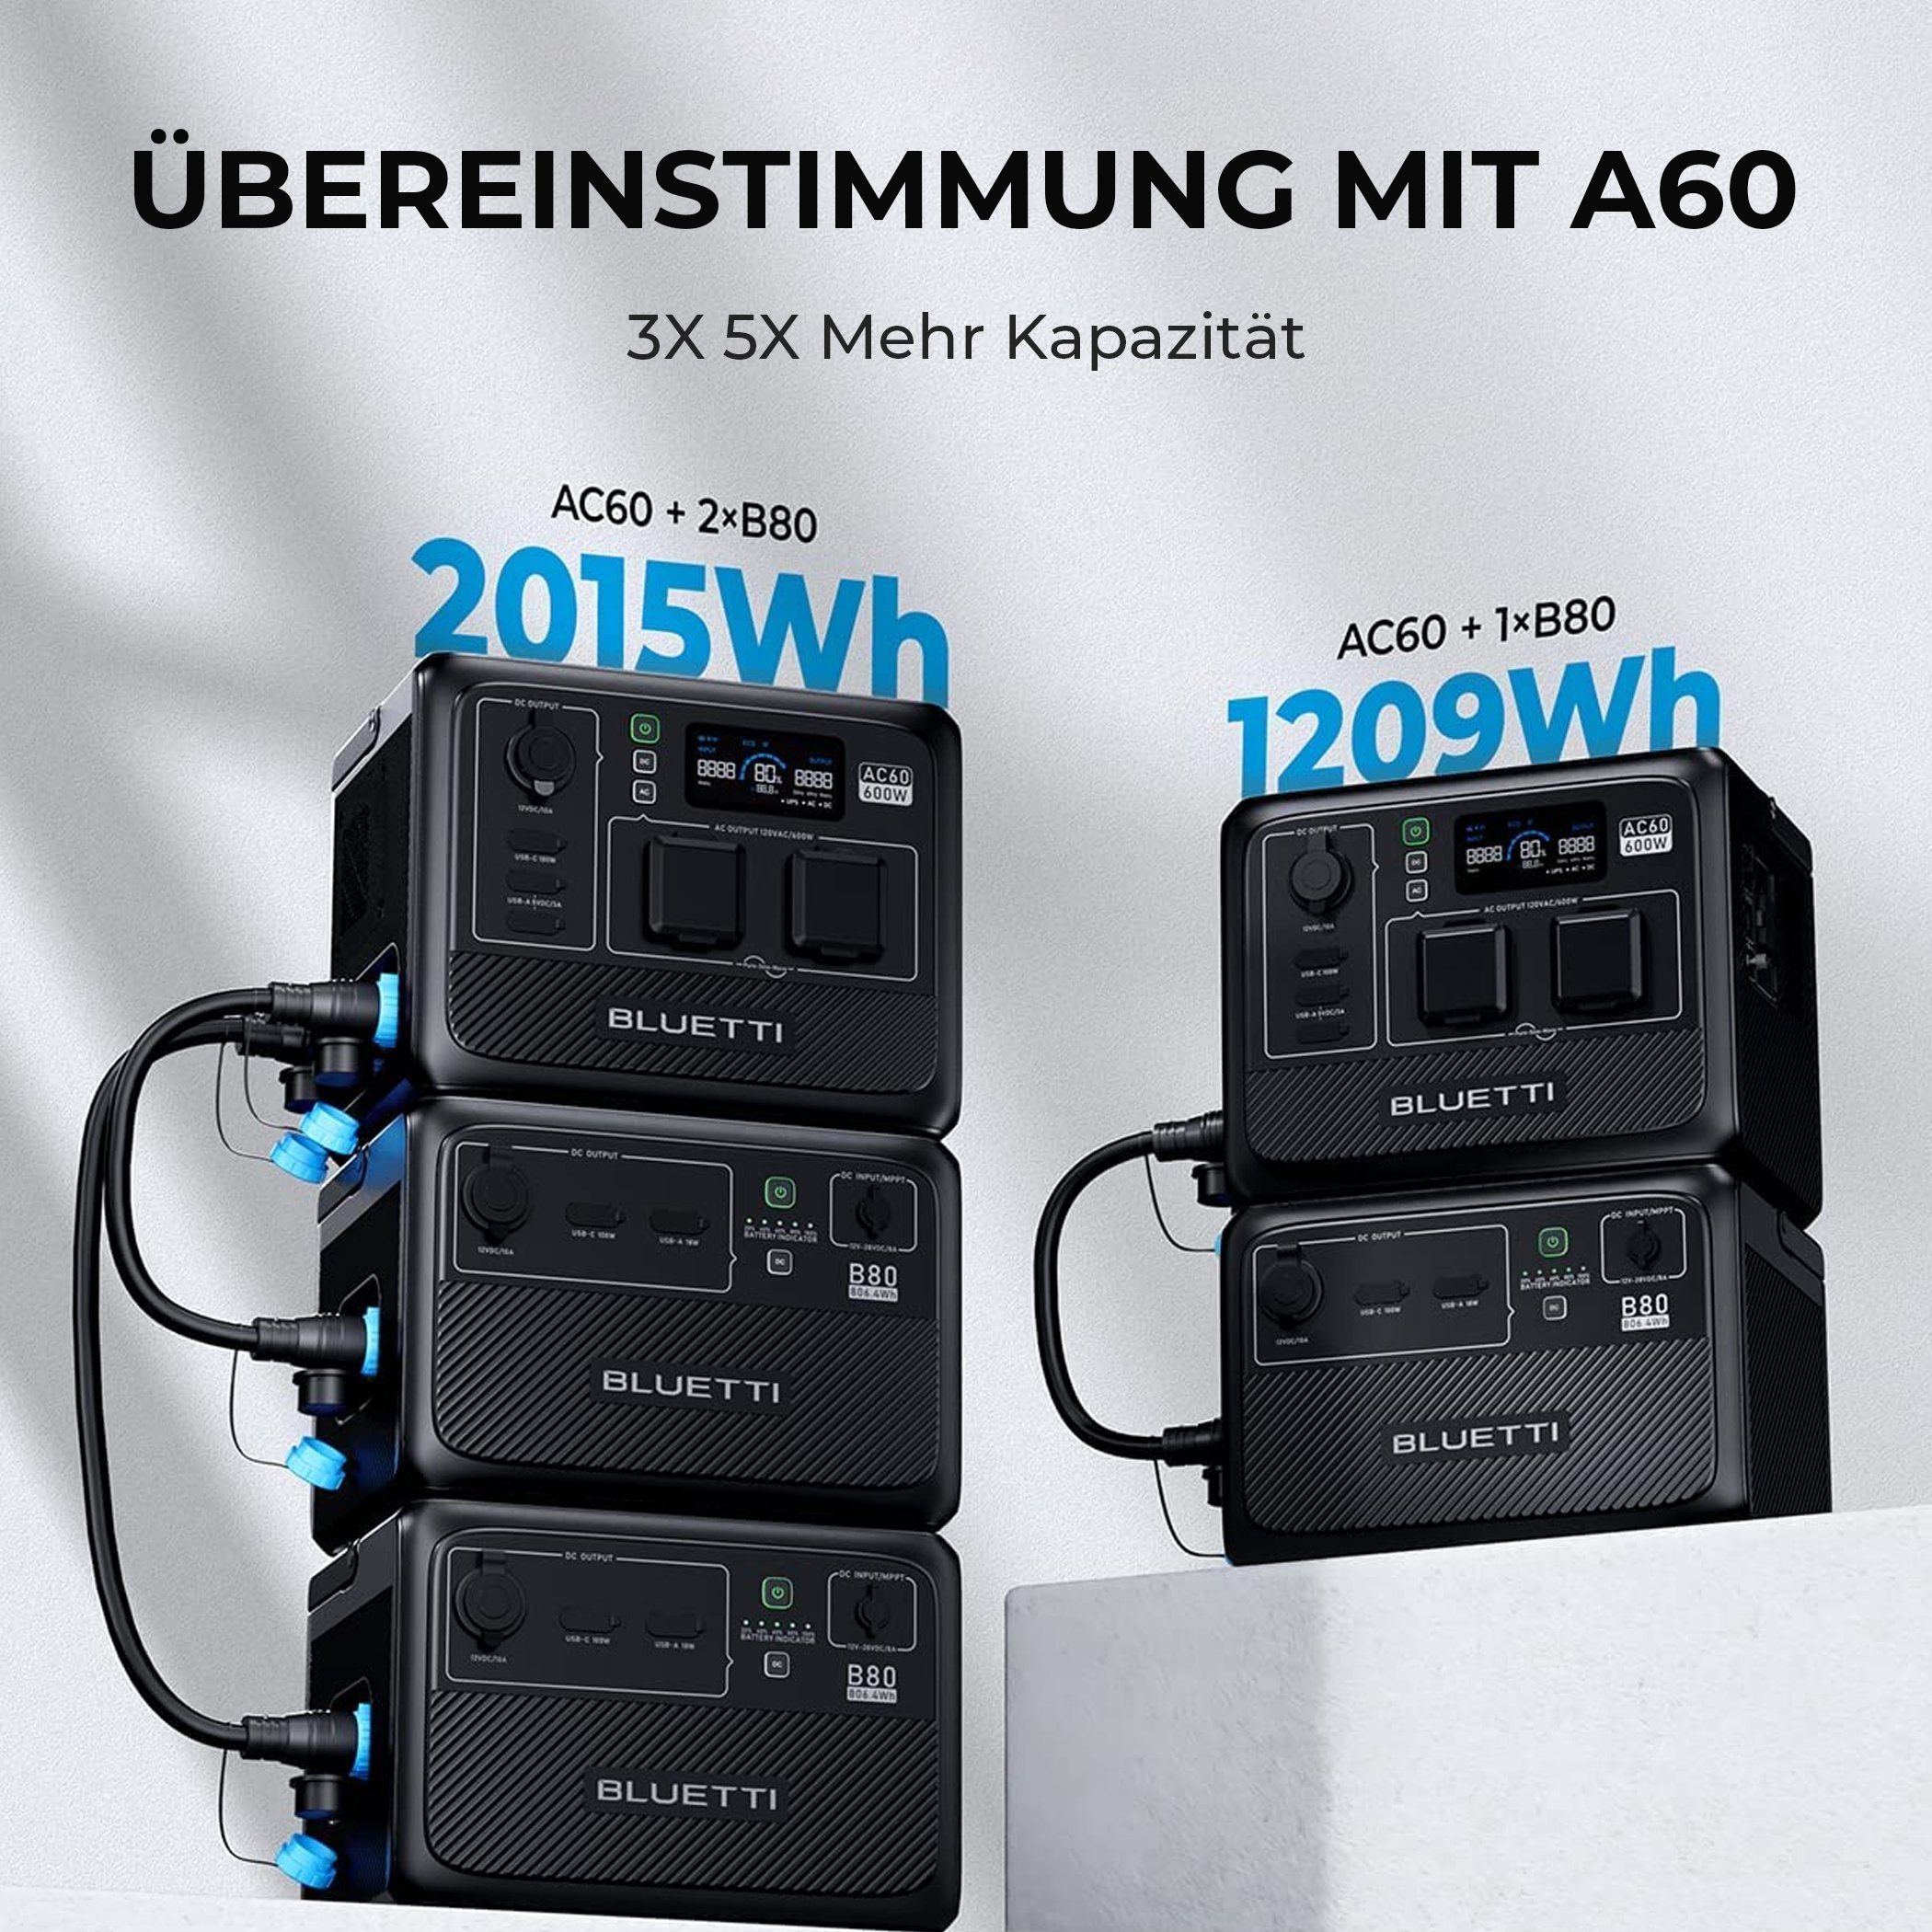 AC60 BLUETTI Wh Schutzart Staubschutz 600W/ Stromerzeuger IP65 für kit, Powerstation +B80 1209 und Wasser- Tragbare